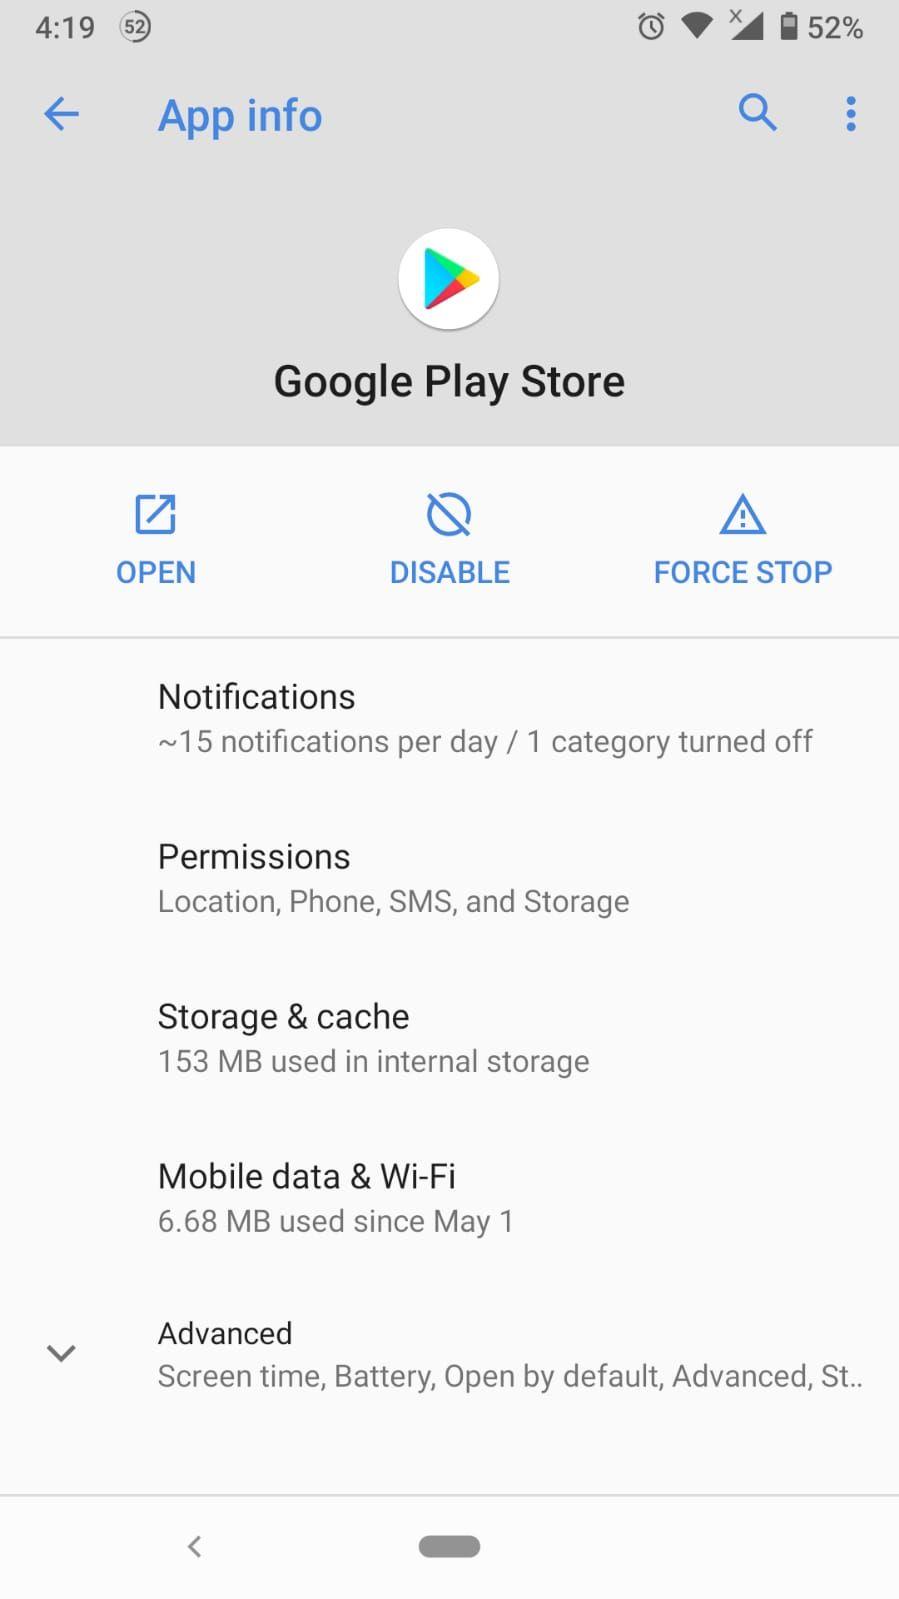 So beheben Sie den Fehler "Google Play-Authentifizierung ist erforderlich"